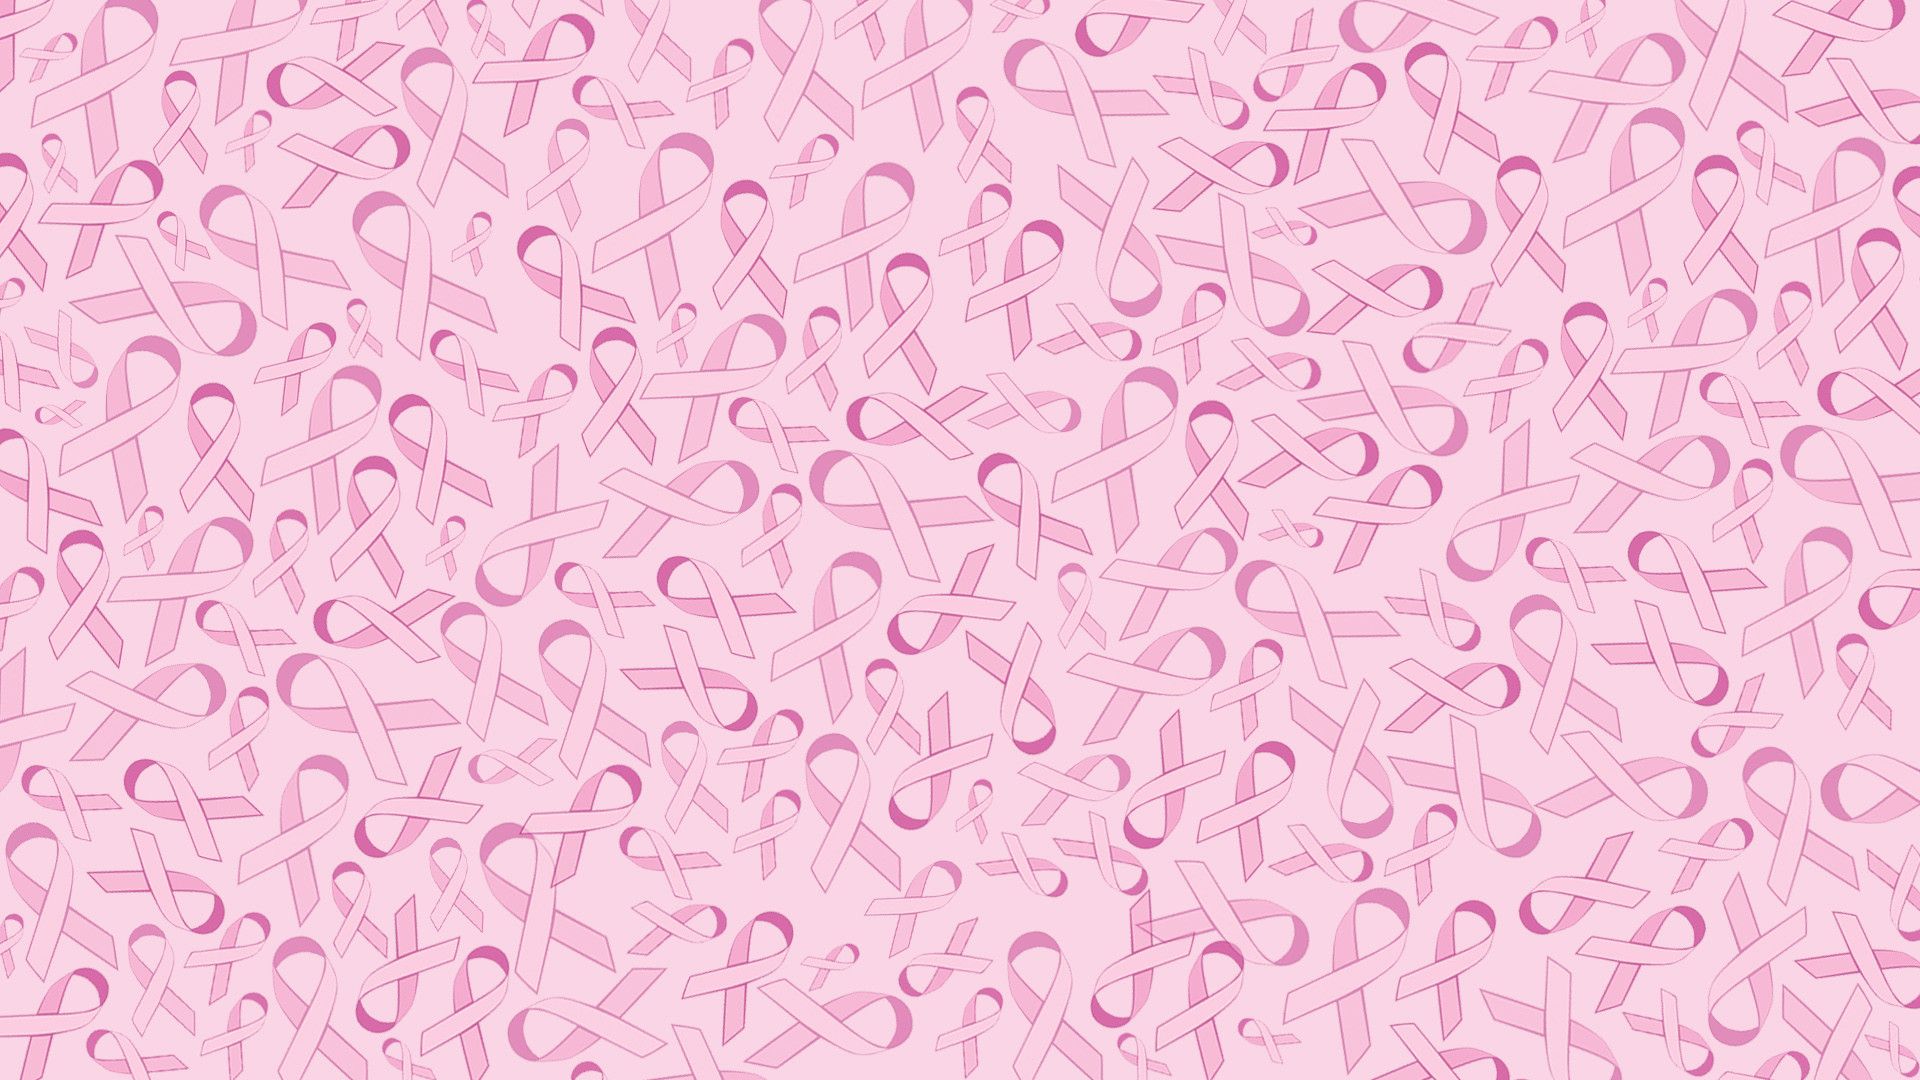 Hình nền dải hồng là sự lựa chọn tuyệt vời cho những ai muốn truyền tải thông điệp quan trọng về sự nhận thức và hỗ trợ cho những người mắc bệnh ung thư vú. Với các hình ảnh tươi sáng, tràn đầy màu hồng, bạn sẽ chắc chắn sẽ được hưởng thụ những thiết kế nổi bật và đầy sức sống.